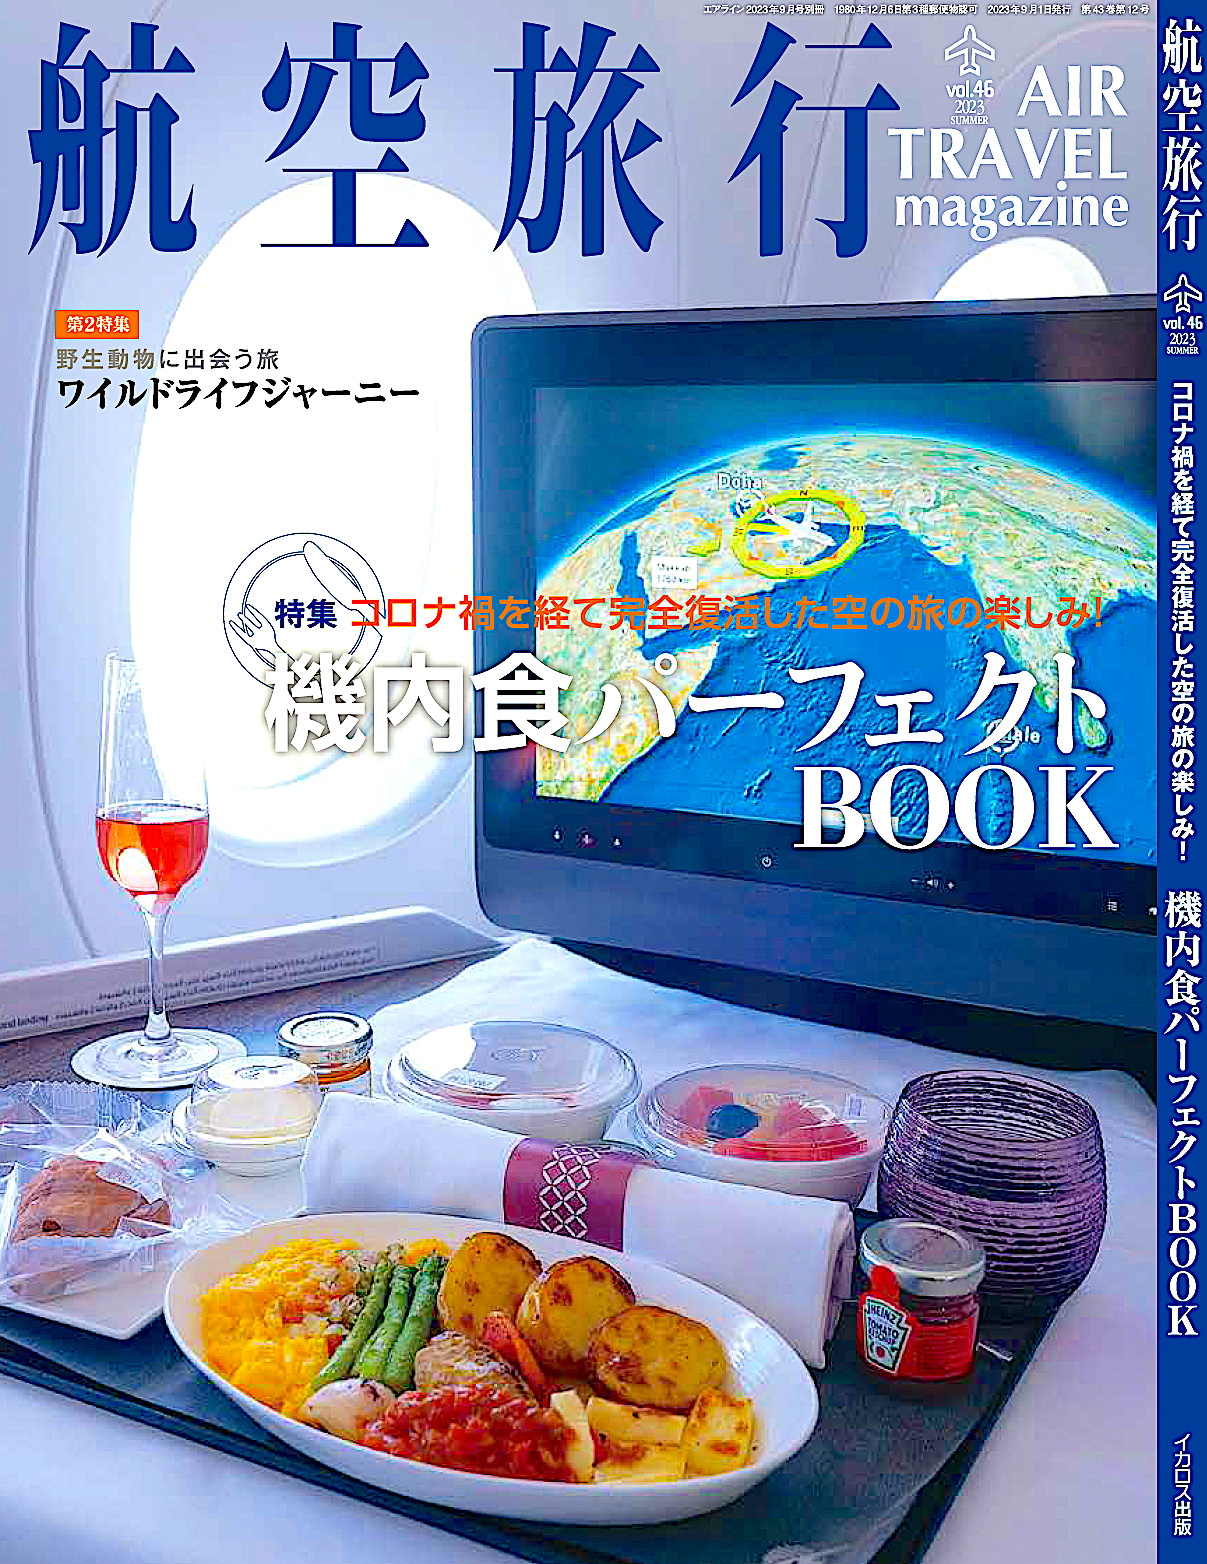 季刊「航空旅行 vol.46」、特集は機内食のすべてが分かる「機内食